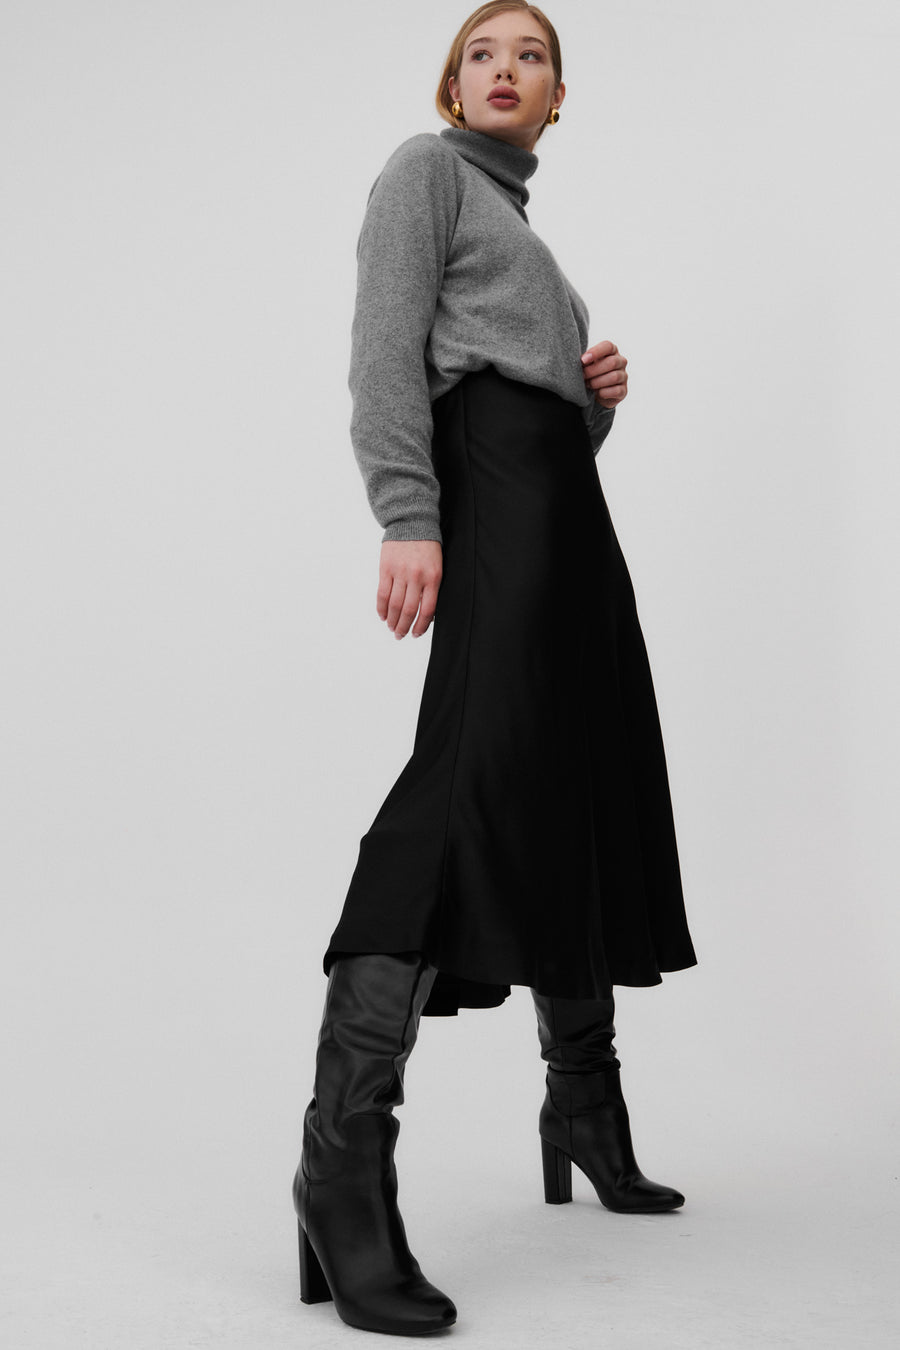 Sukienka z wiskozy / 03 / 12 / onyx black *kaszmirowy-sweter-16-13-grey-stone* ?Modelka ma 177cm wzrostu i nosi rozmiar S?